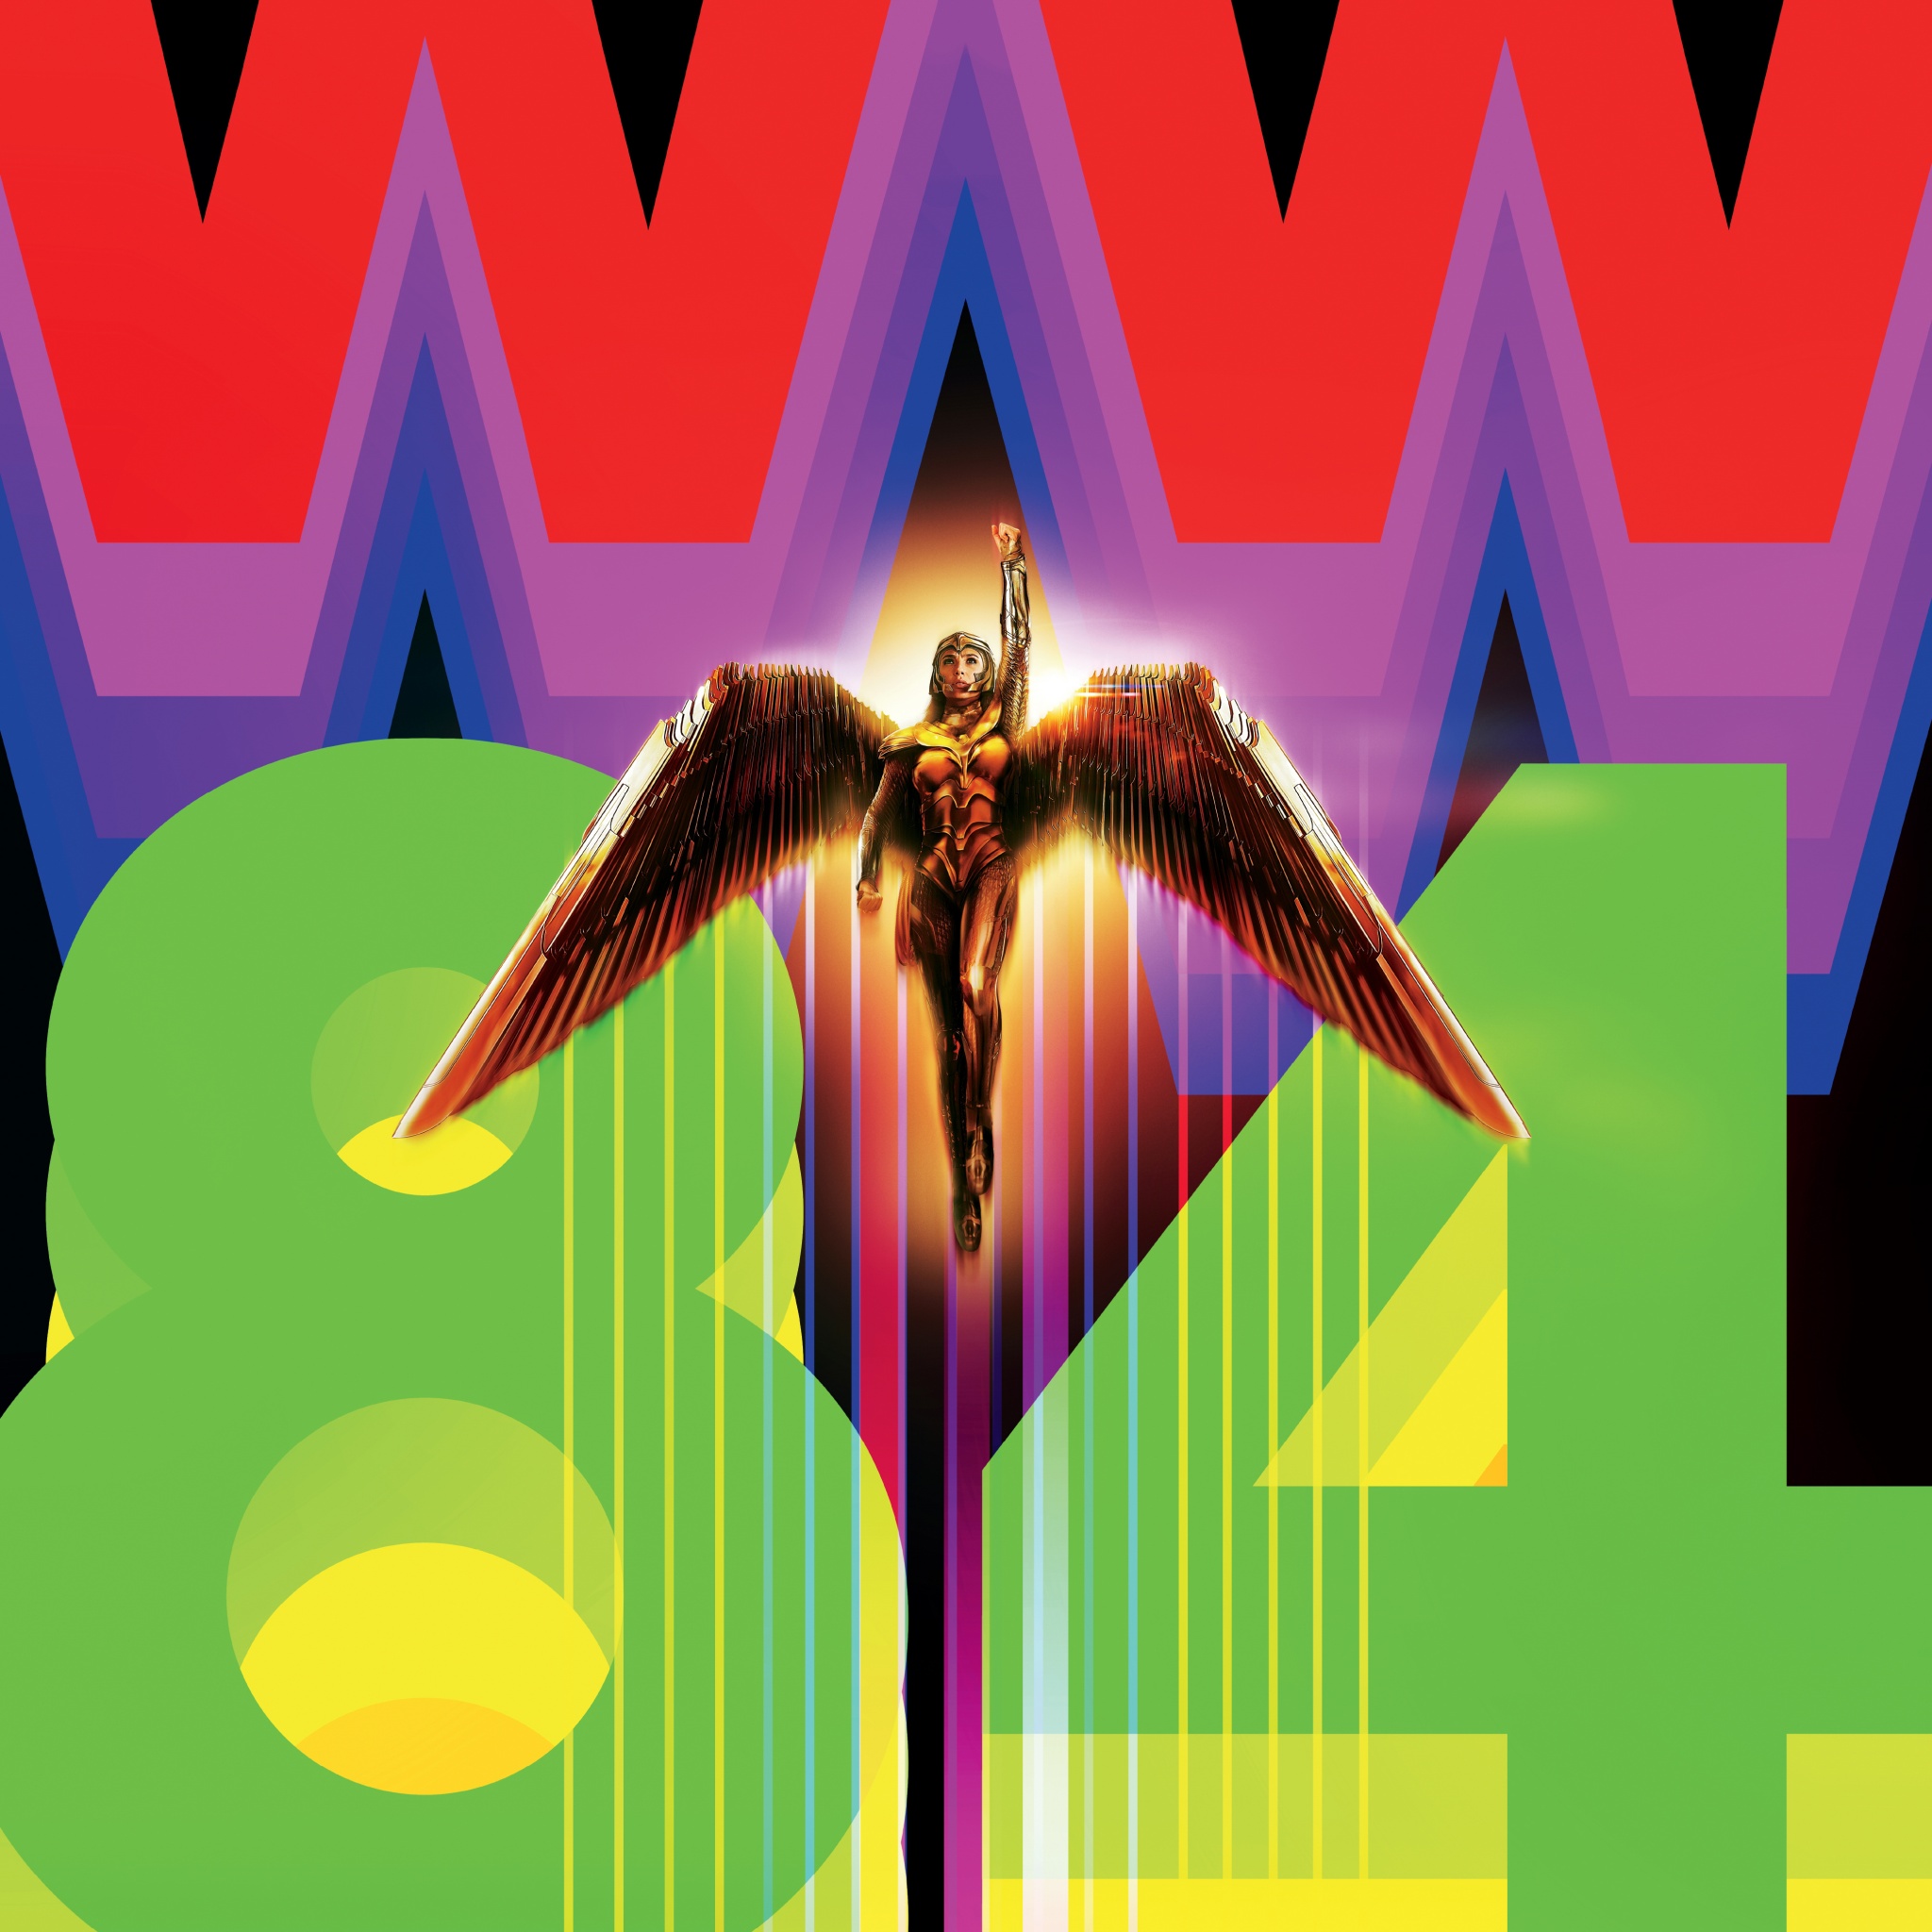 Wonder Woman 1984, DC Database